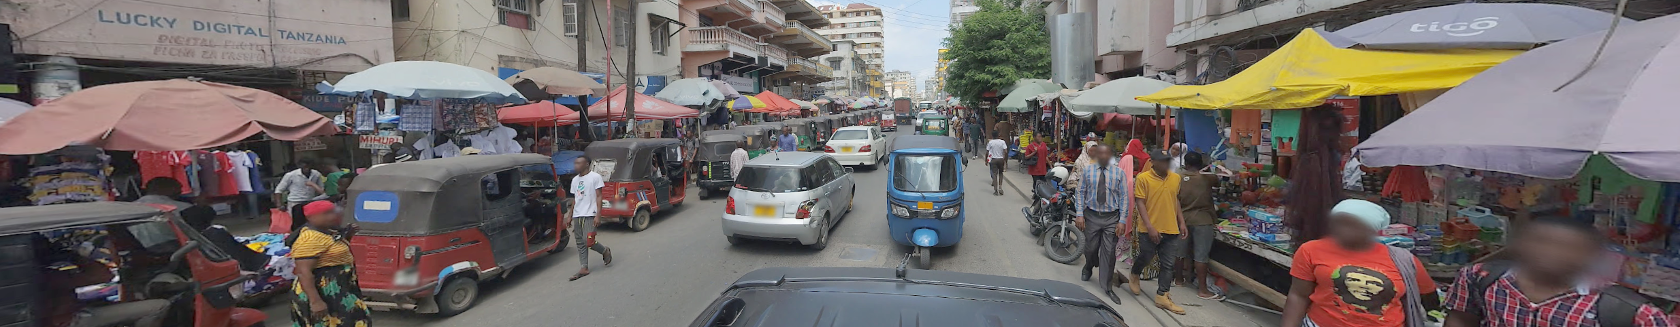 Google Street View contribuye al empoderamiento de las comunidades de Zanzíbar mediante la herramienta Global National Tour